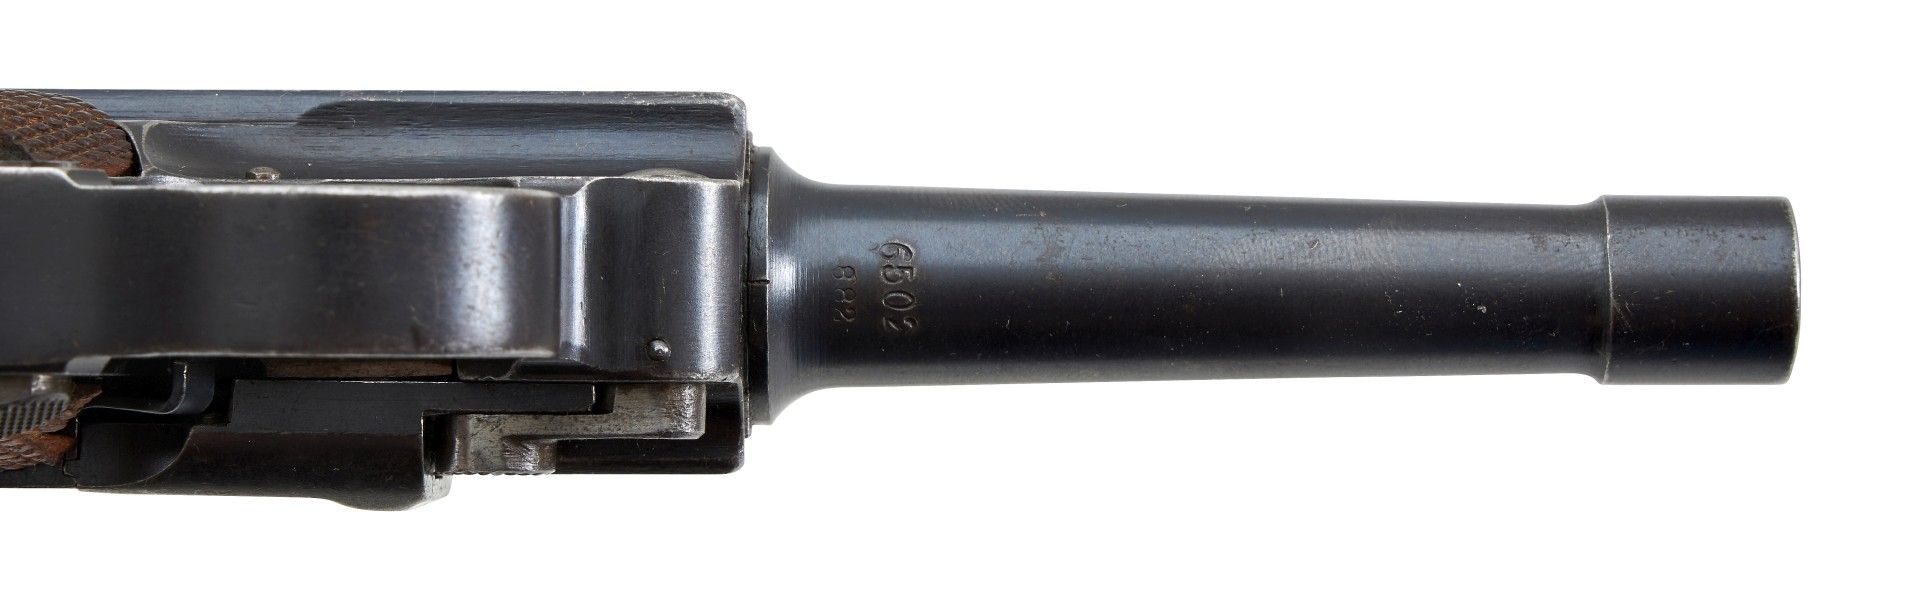 Halbautomatische Pistole Mod.: P. 08 (Polizei) Herst.: DWM Baujahr: 1921 Deutsche Waffen- und Mu... - Image 5 of 6